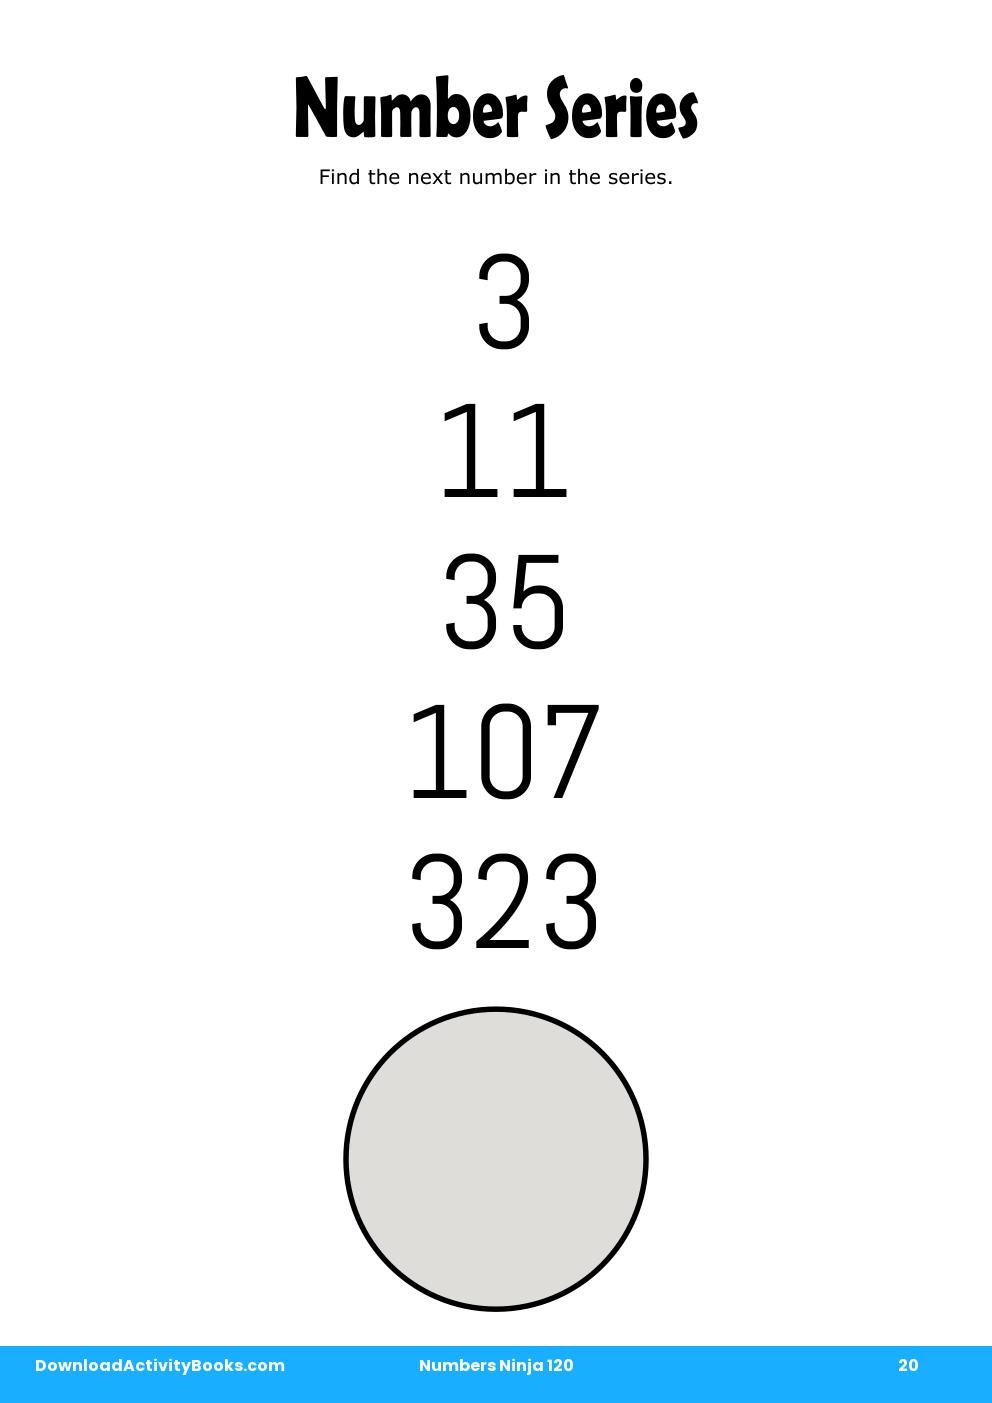 Number Series in Numbers Ninja 120